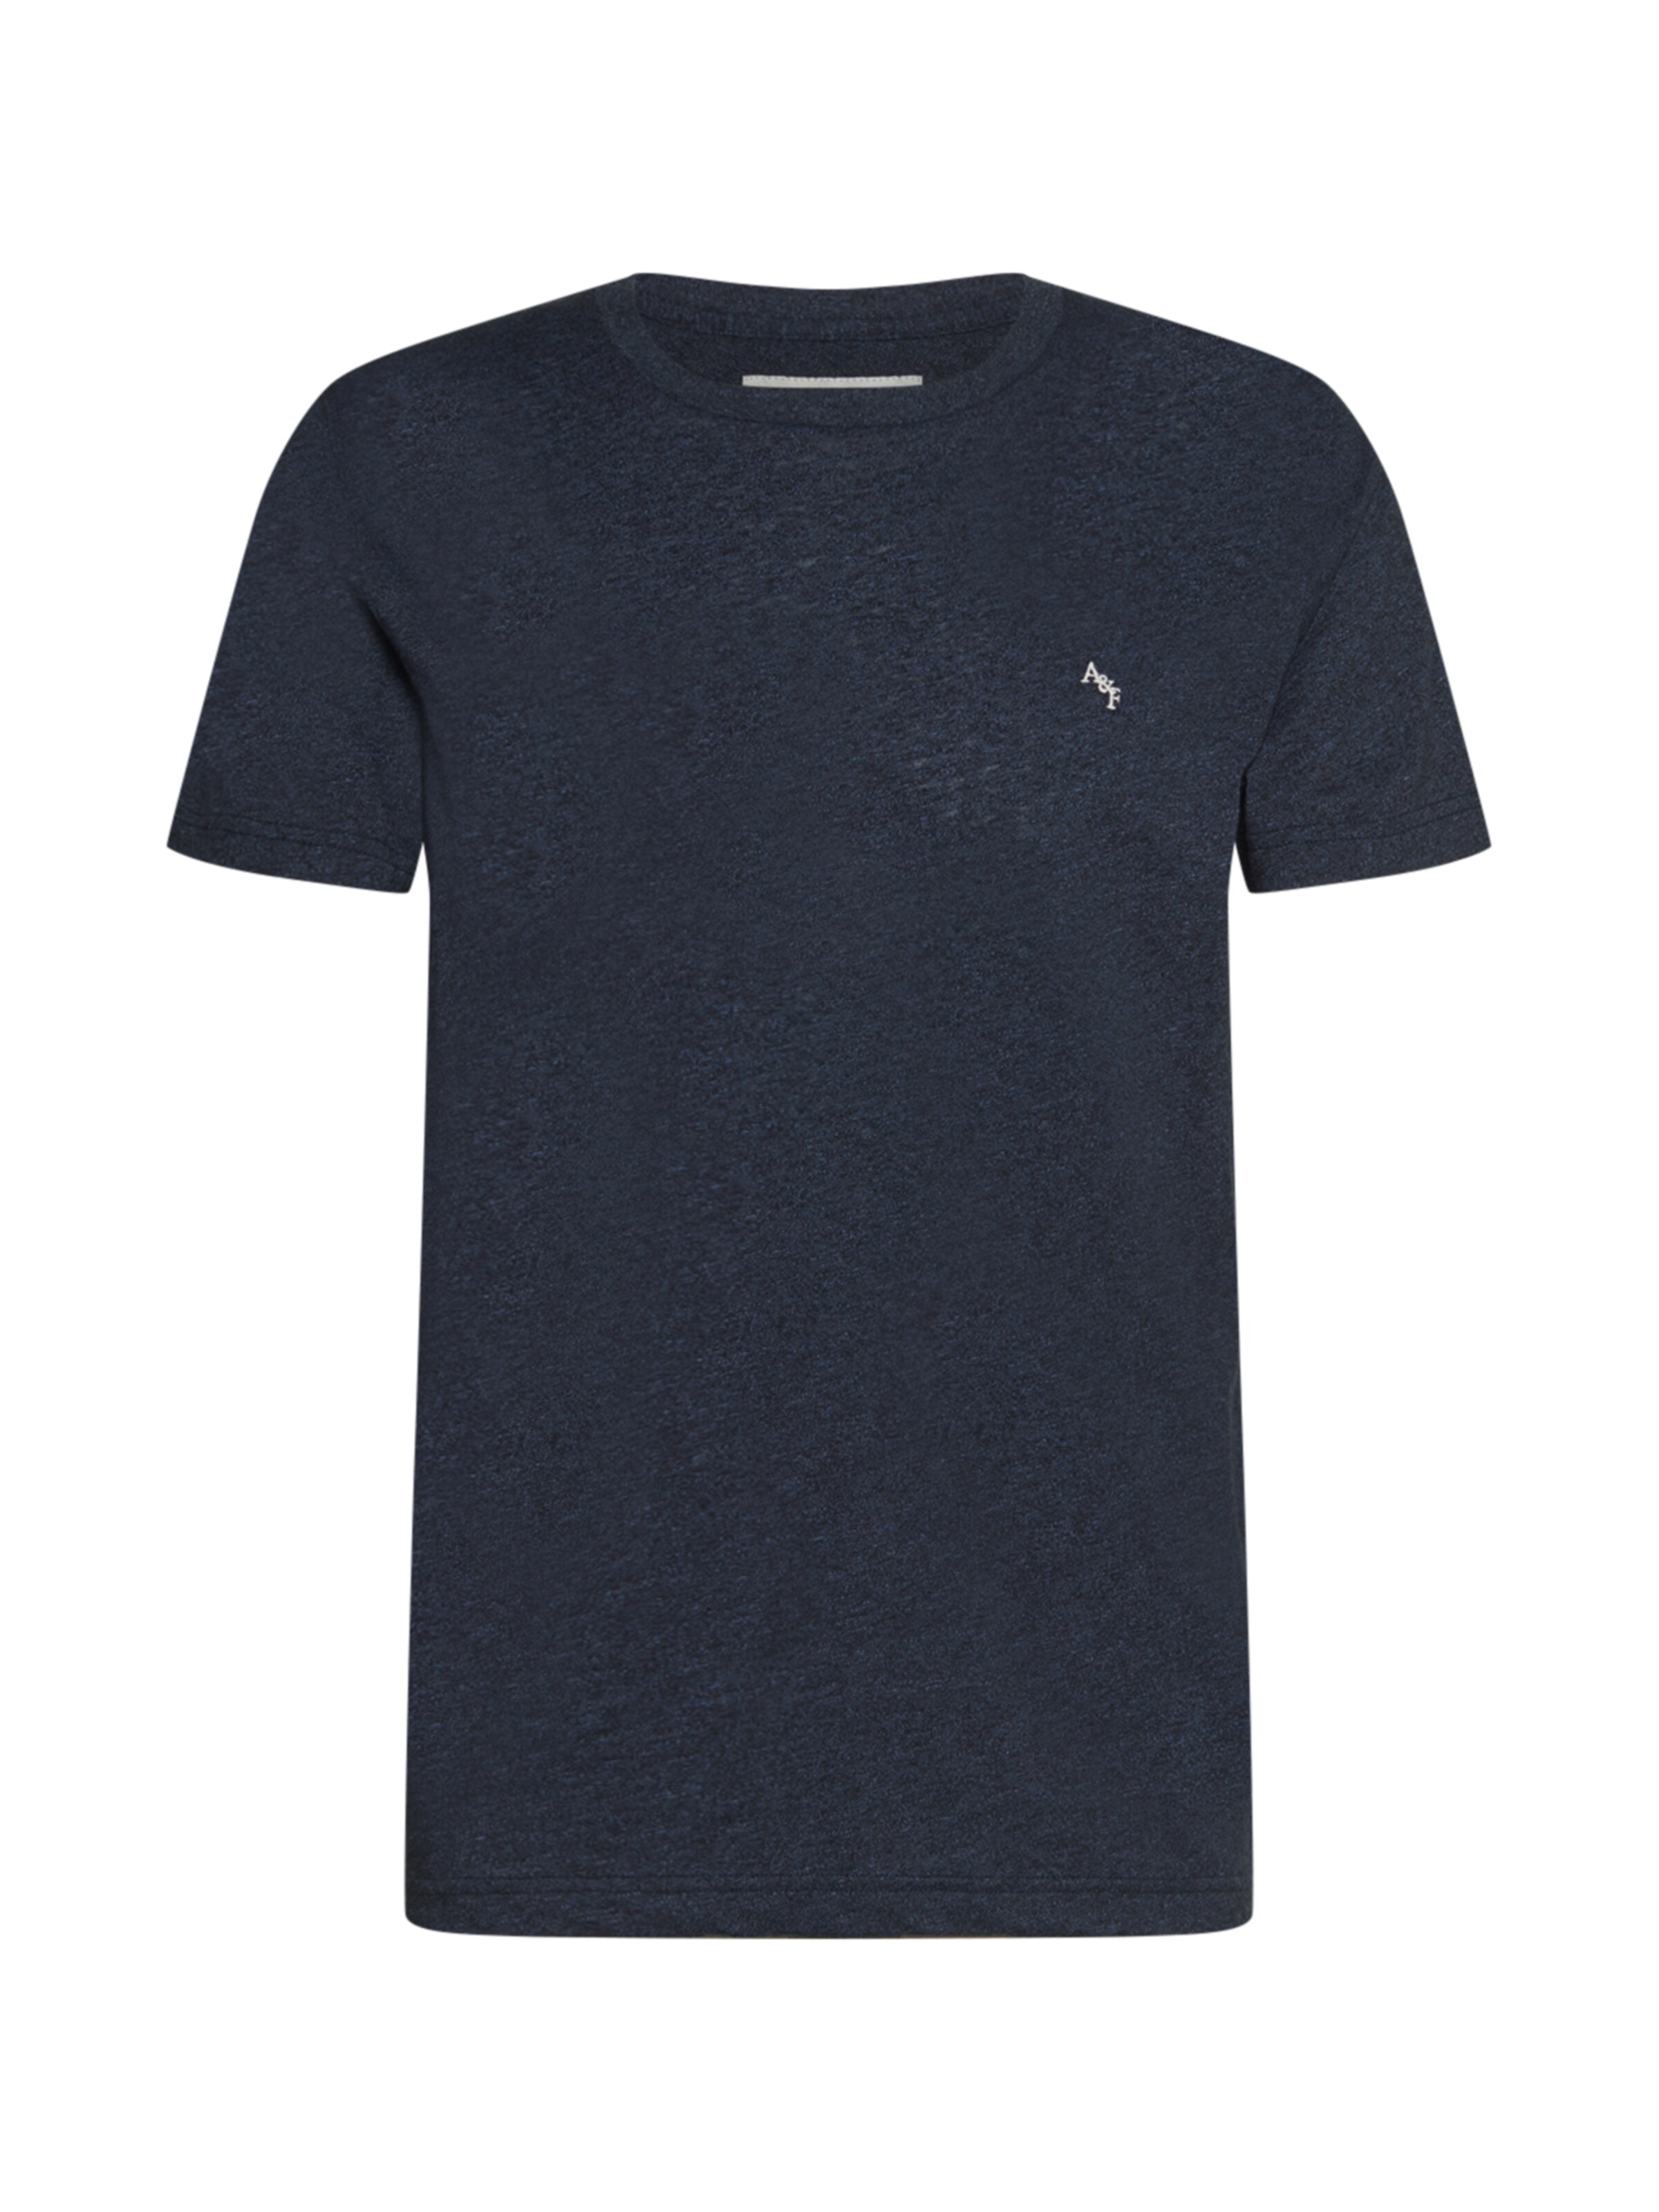 Maglie e T-shirt Uomo Abercrombie & Fitch Maglietta in Nero 